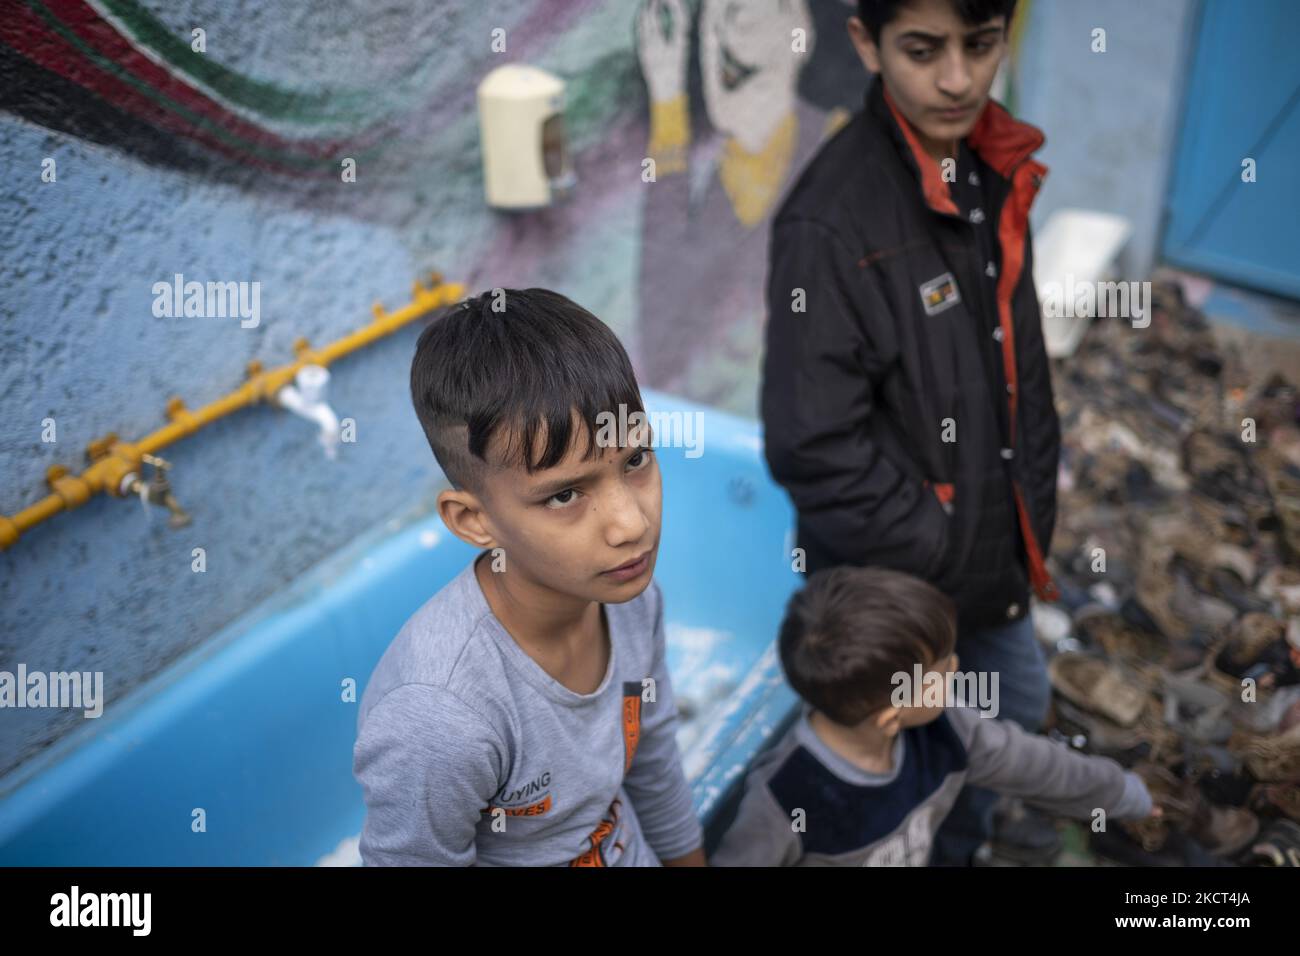 Un ragazzo afghano rifugiato guarda mentre siede alla scuola di Farhang nel primo giorno del nuovo anno accademico? Nel sud di Teheran il 1 novembre 2021. La scuola di Farhang è stata fondata nel 2000 dal rifugiato afgano Nader Mousavi che si è laureato in sociologia presso l'Università di Teheran, per i bambini rifugiati afghani, E ora due anni dopo l’inizio dell’epidemia COVID-19 in Iran, dove la scuola operava a tempo parziale, ha iniziato a funzionare a tempo pieno e le scolaresche e gli scolari afghani possono frequentare la scuola. Le famiglie non devono pagare i soldi per le tasse scolastiche come è fré Foto Stock